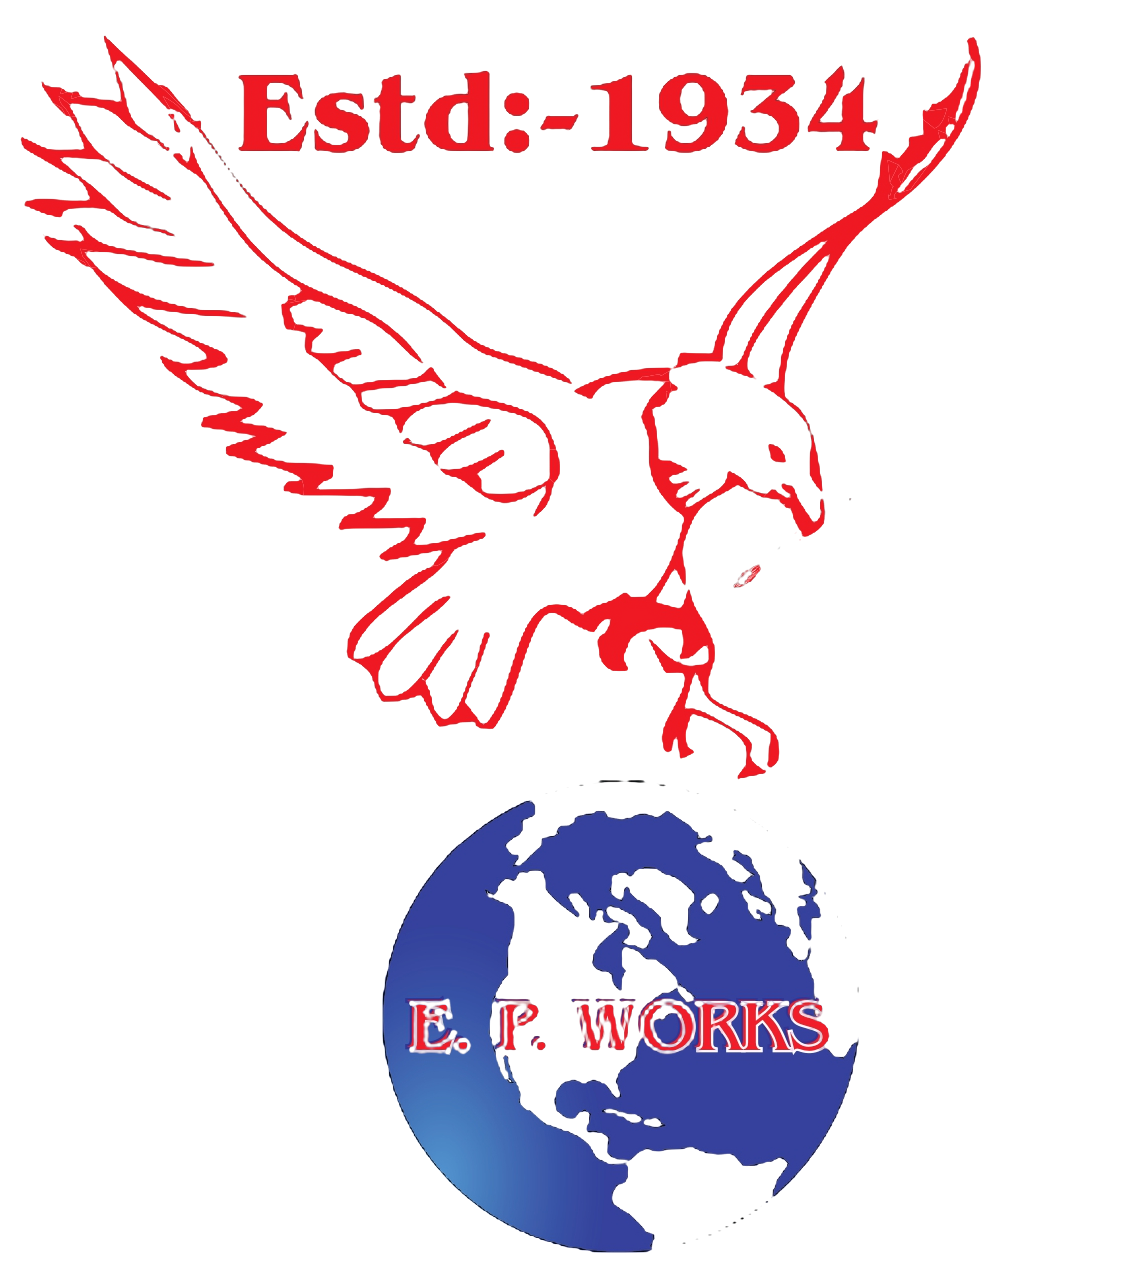 EPW(Eagle painting Work)